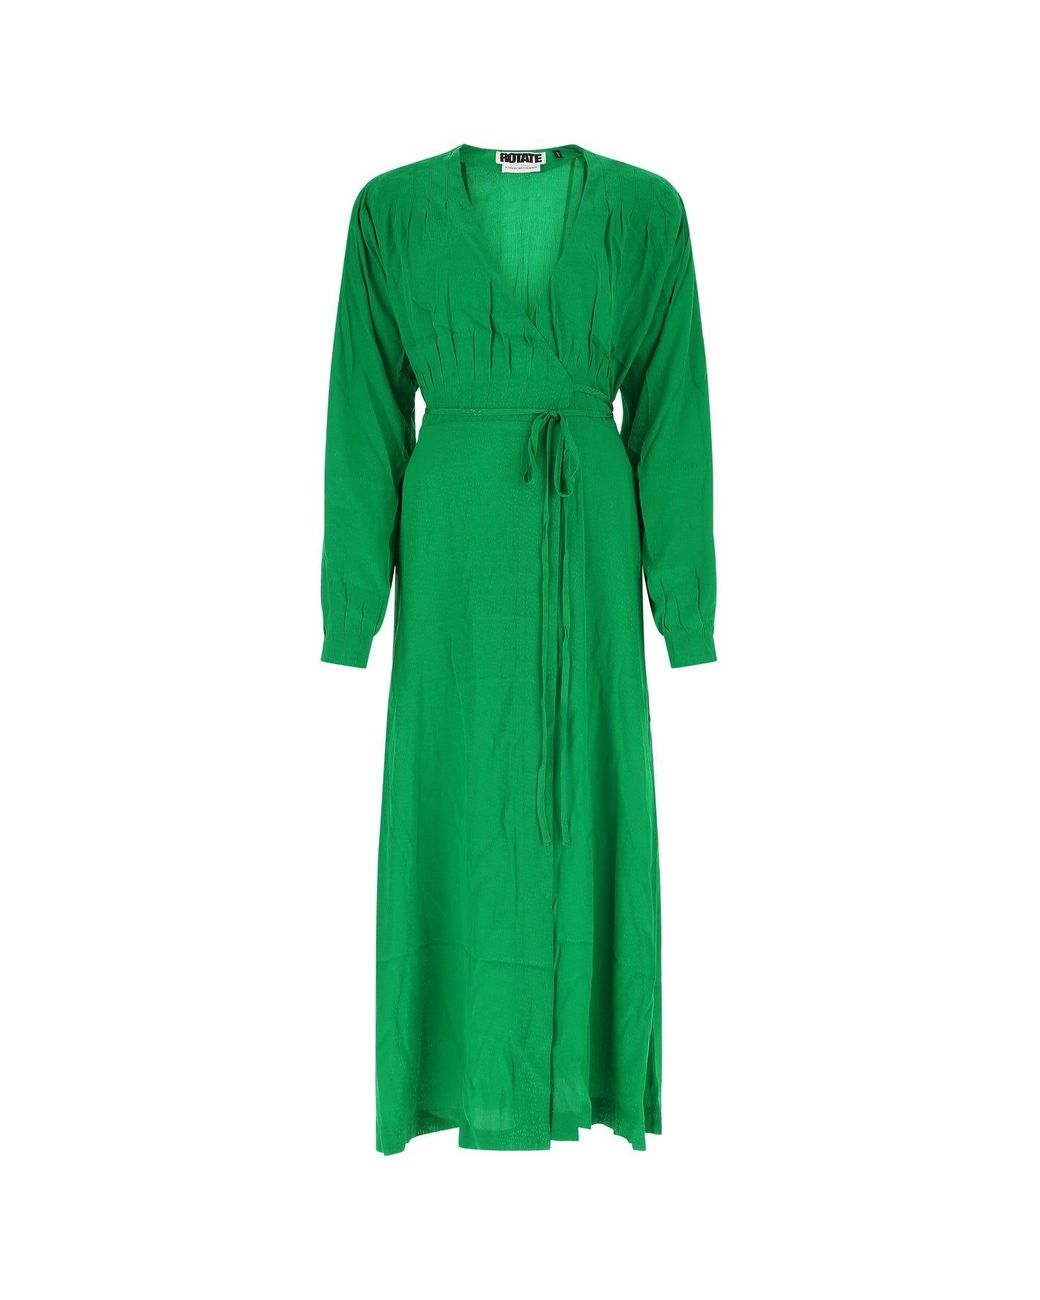 ROTATE BIRGER CHRISTENSEN Grass Green Viscose Marisol Dress | Lyst